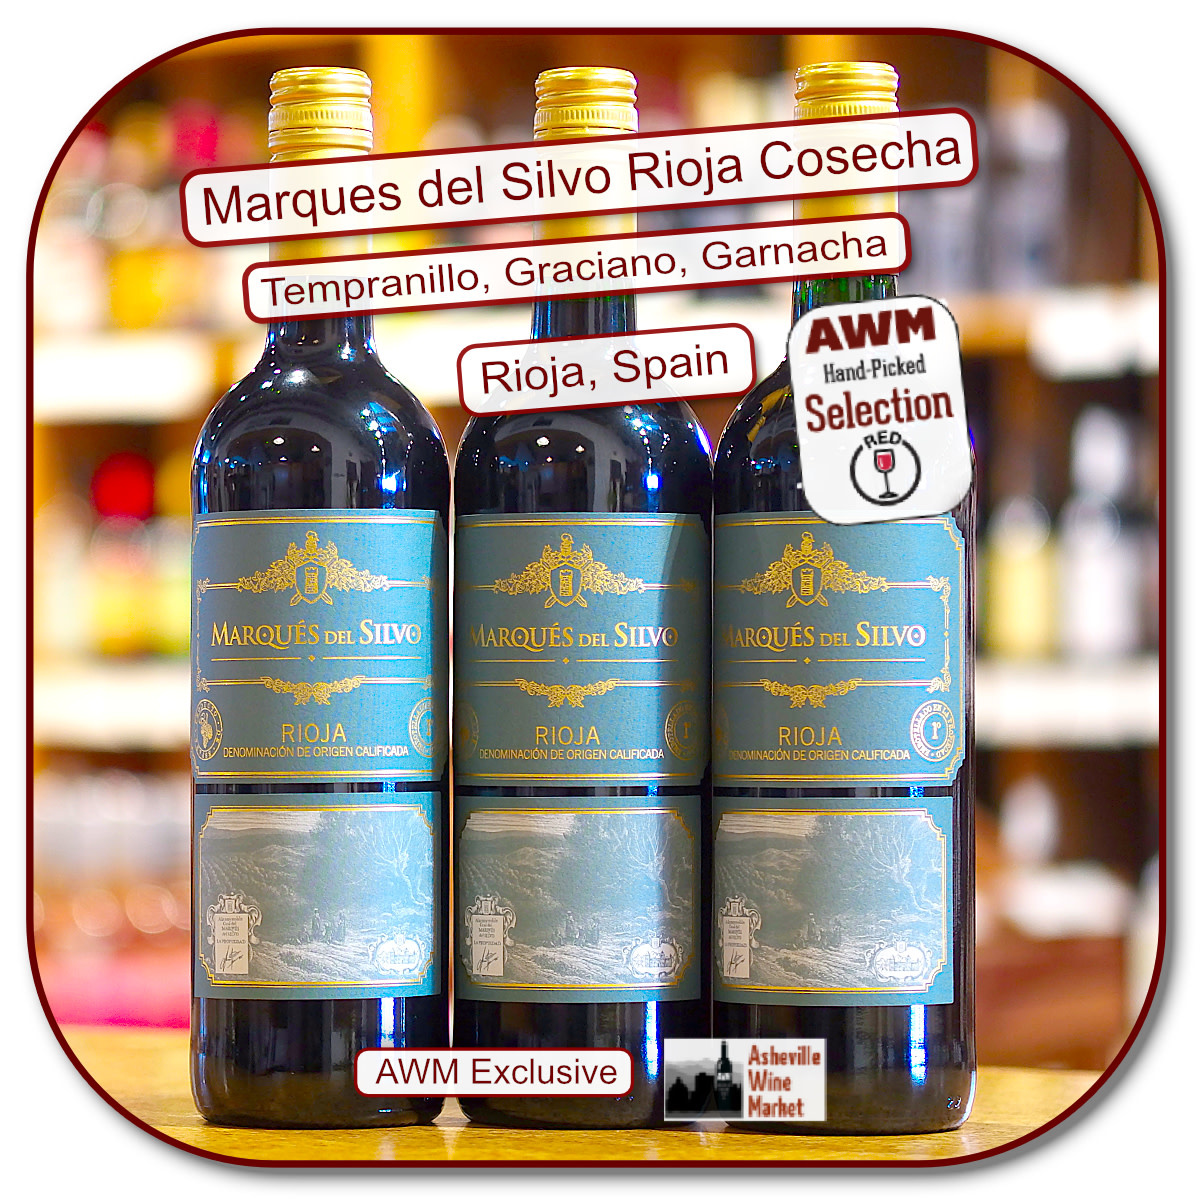 Marques del Silvo Wine Market Tinto Asheville 2019 - The Rioja Cosecha